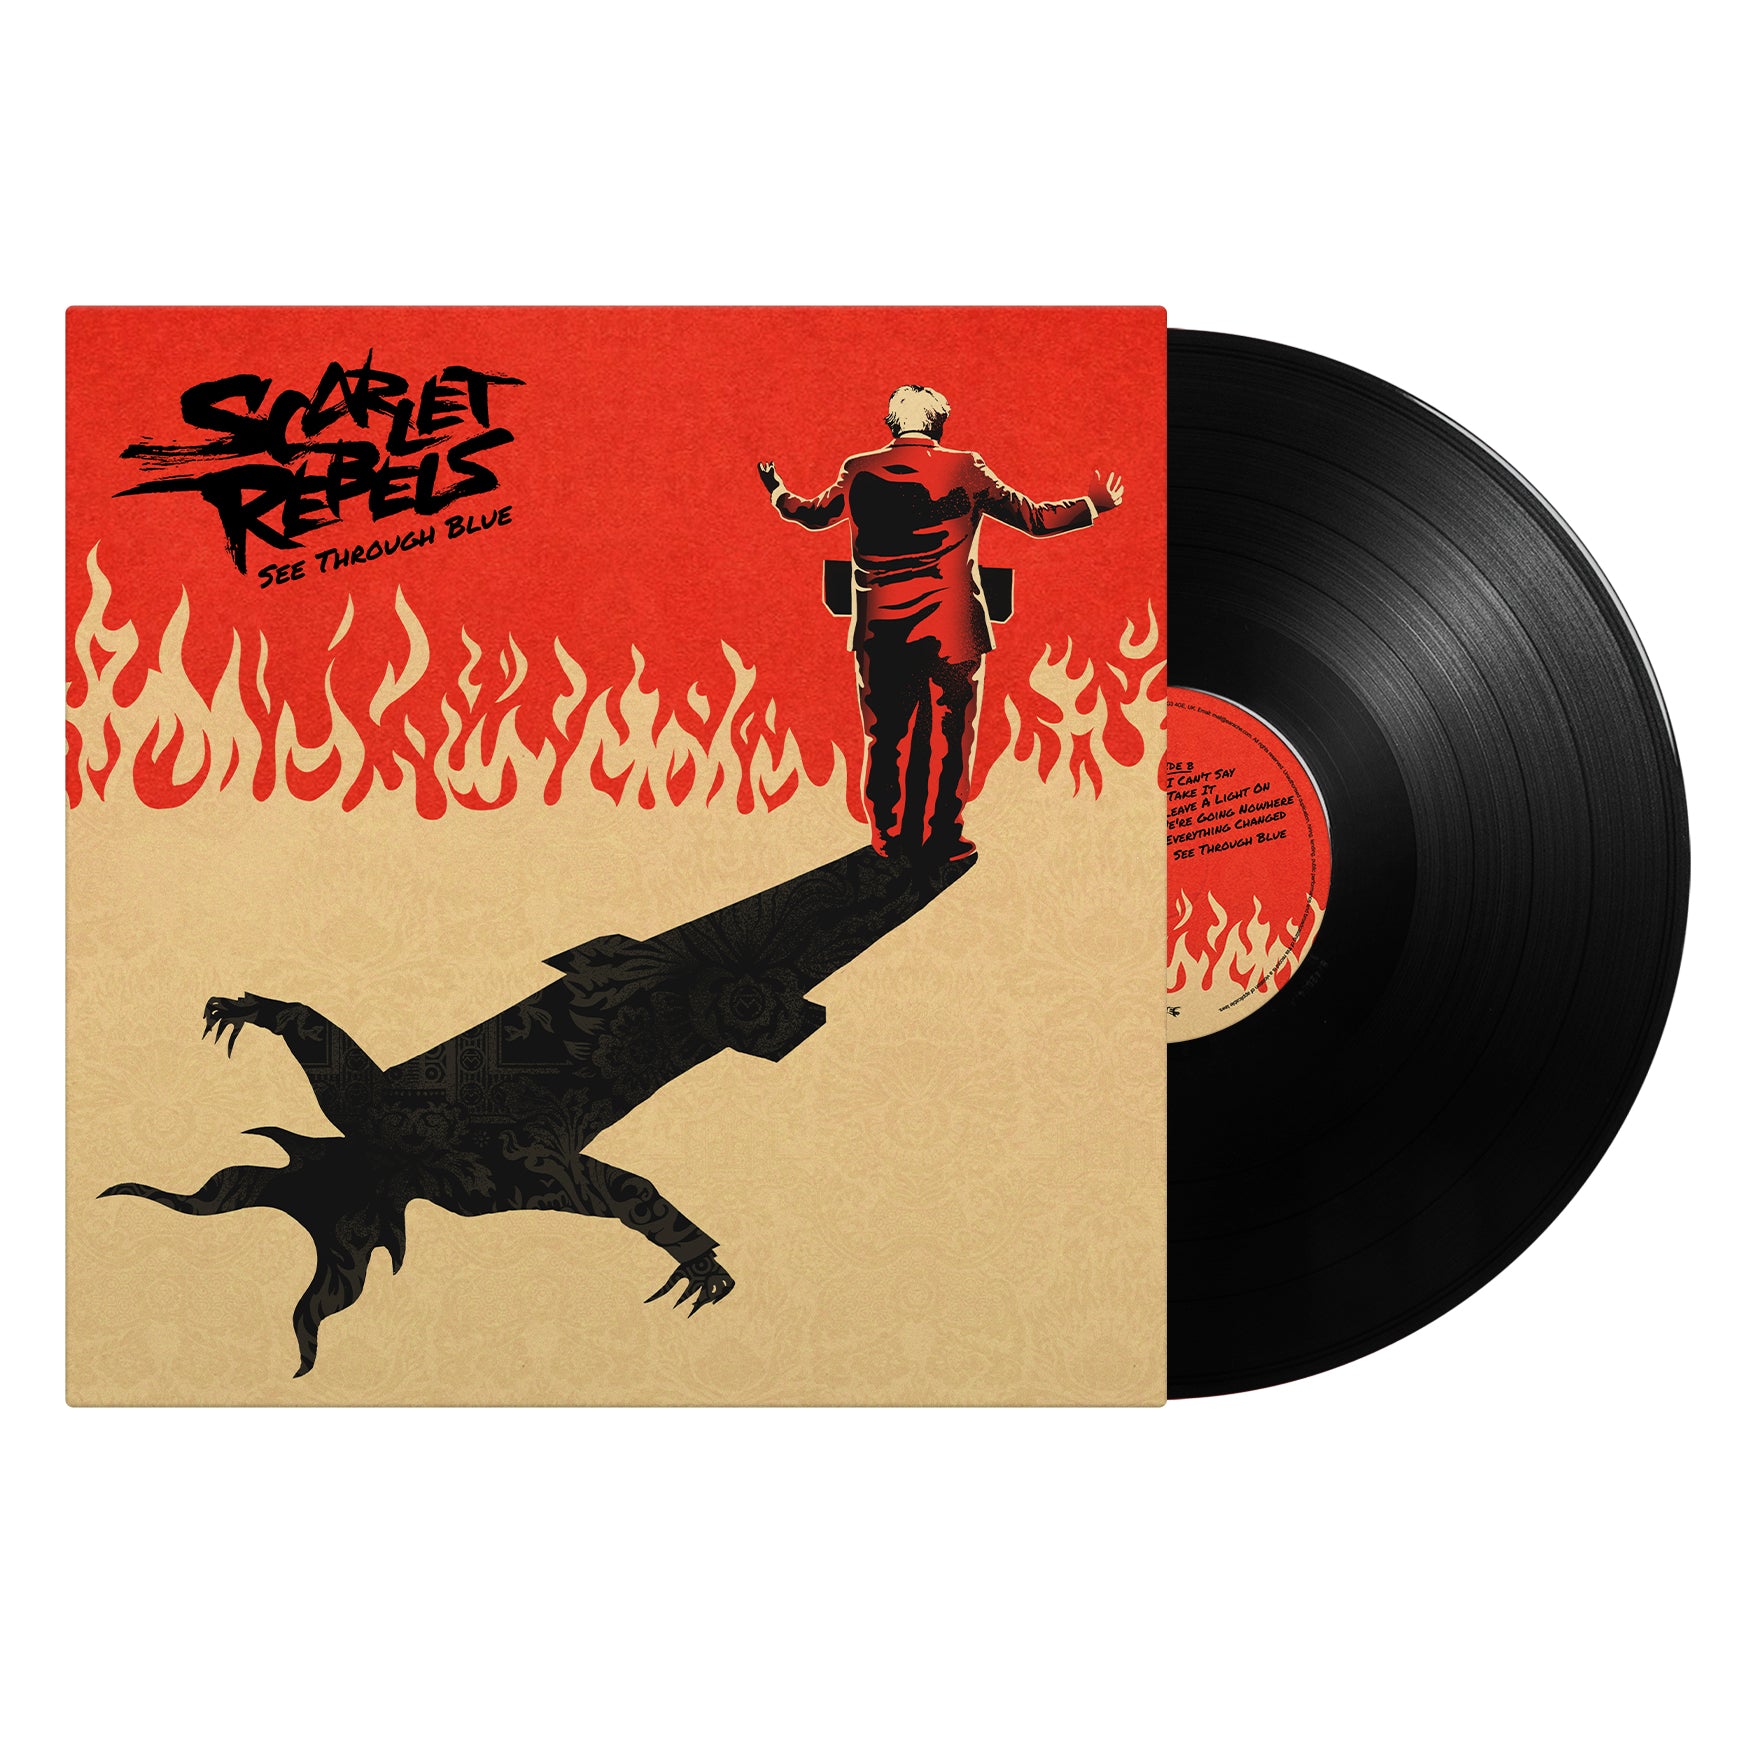 Scarlet Rebels "See Through Blue" Black Vinyl